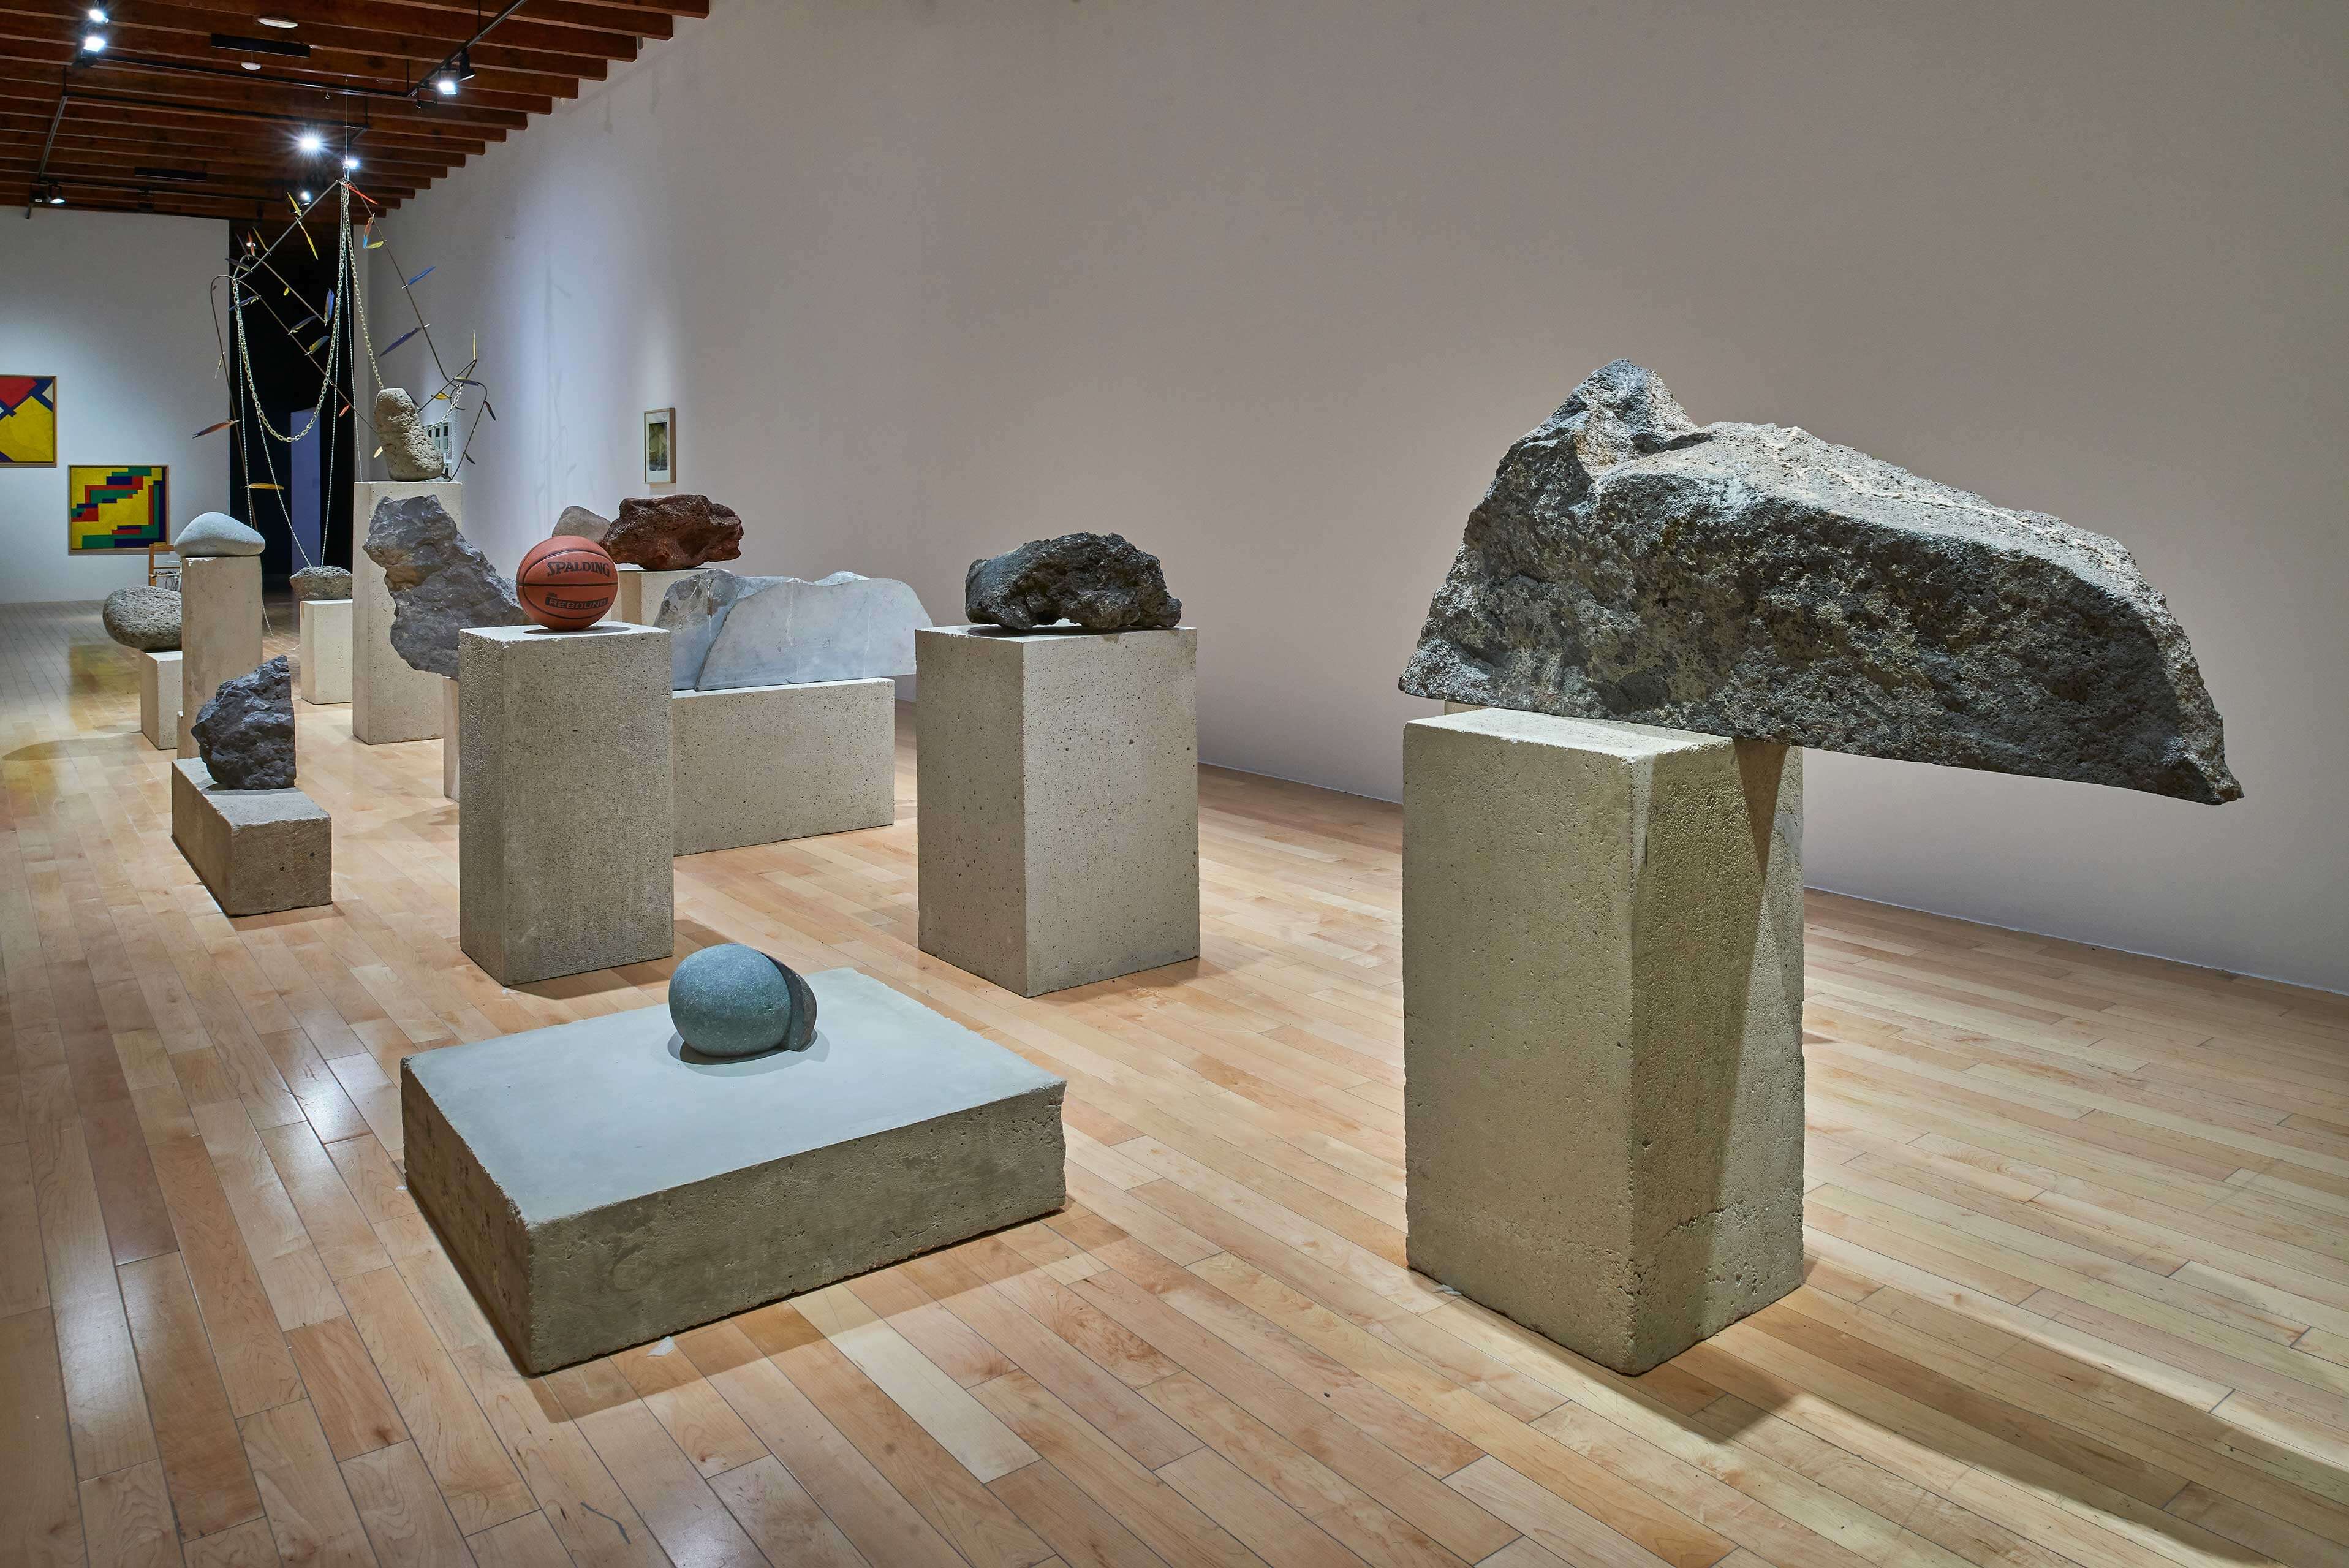 La singularidad tiene algo de irreal | El tiempo en las cosas I. Salas de Arte Contemporáneo | Museo Amparo, Puebla